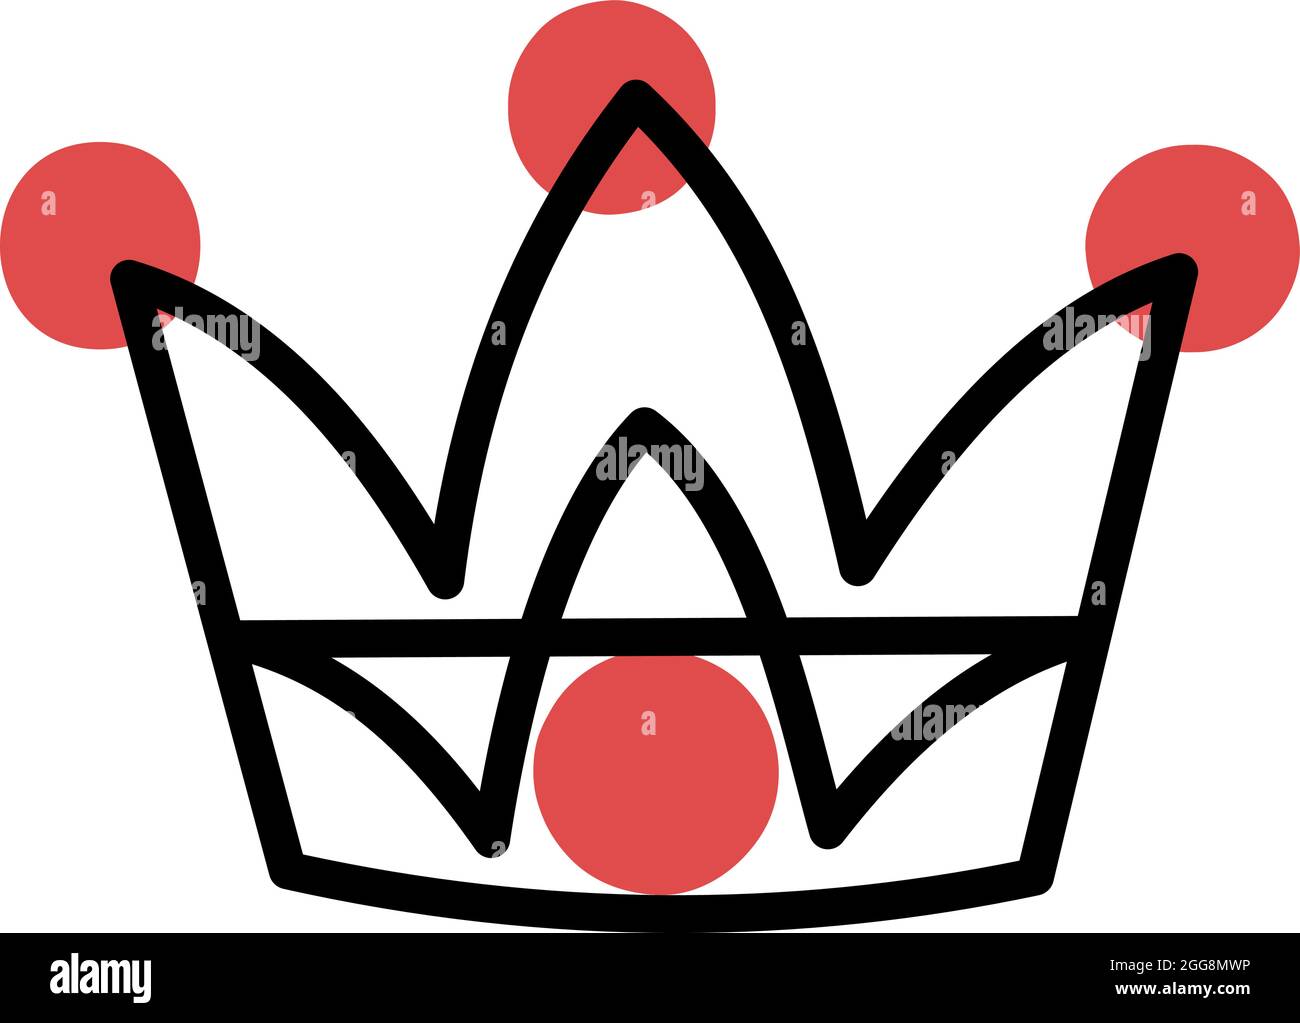 Krone mit drei Spitzen, Illustration, Vektor, auf weißem Hintergrund. Stock Vektor